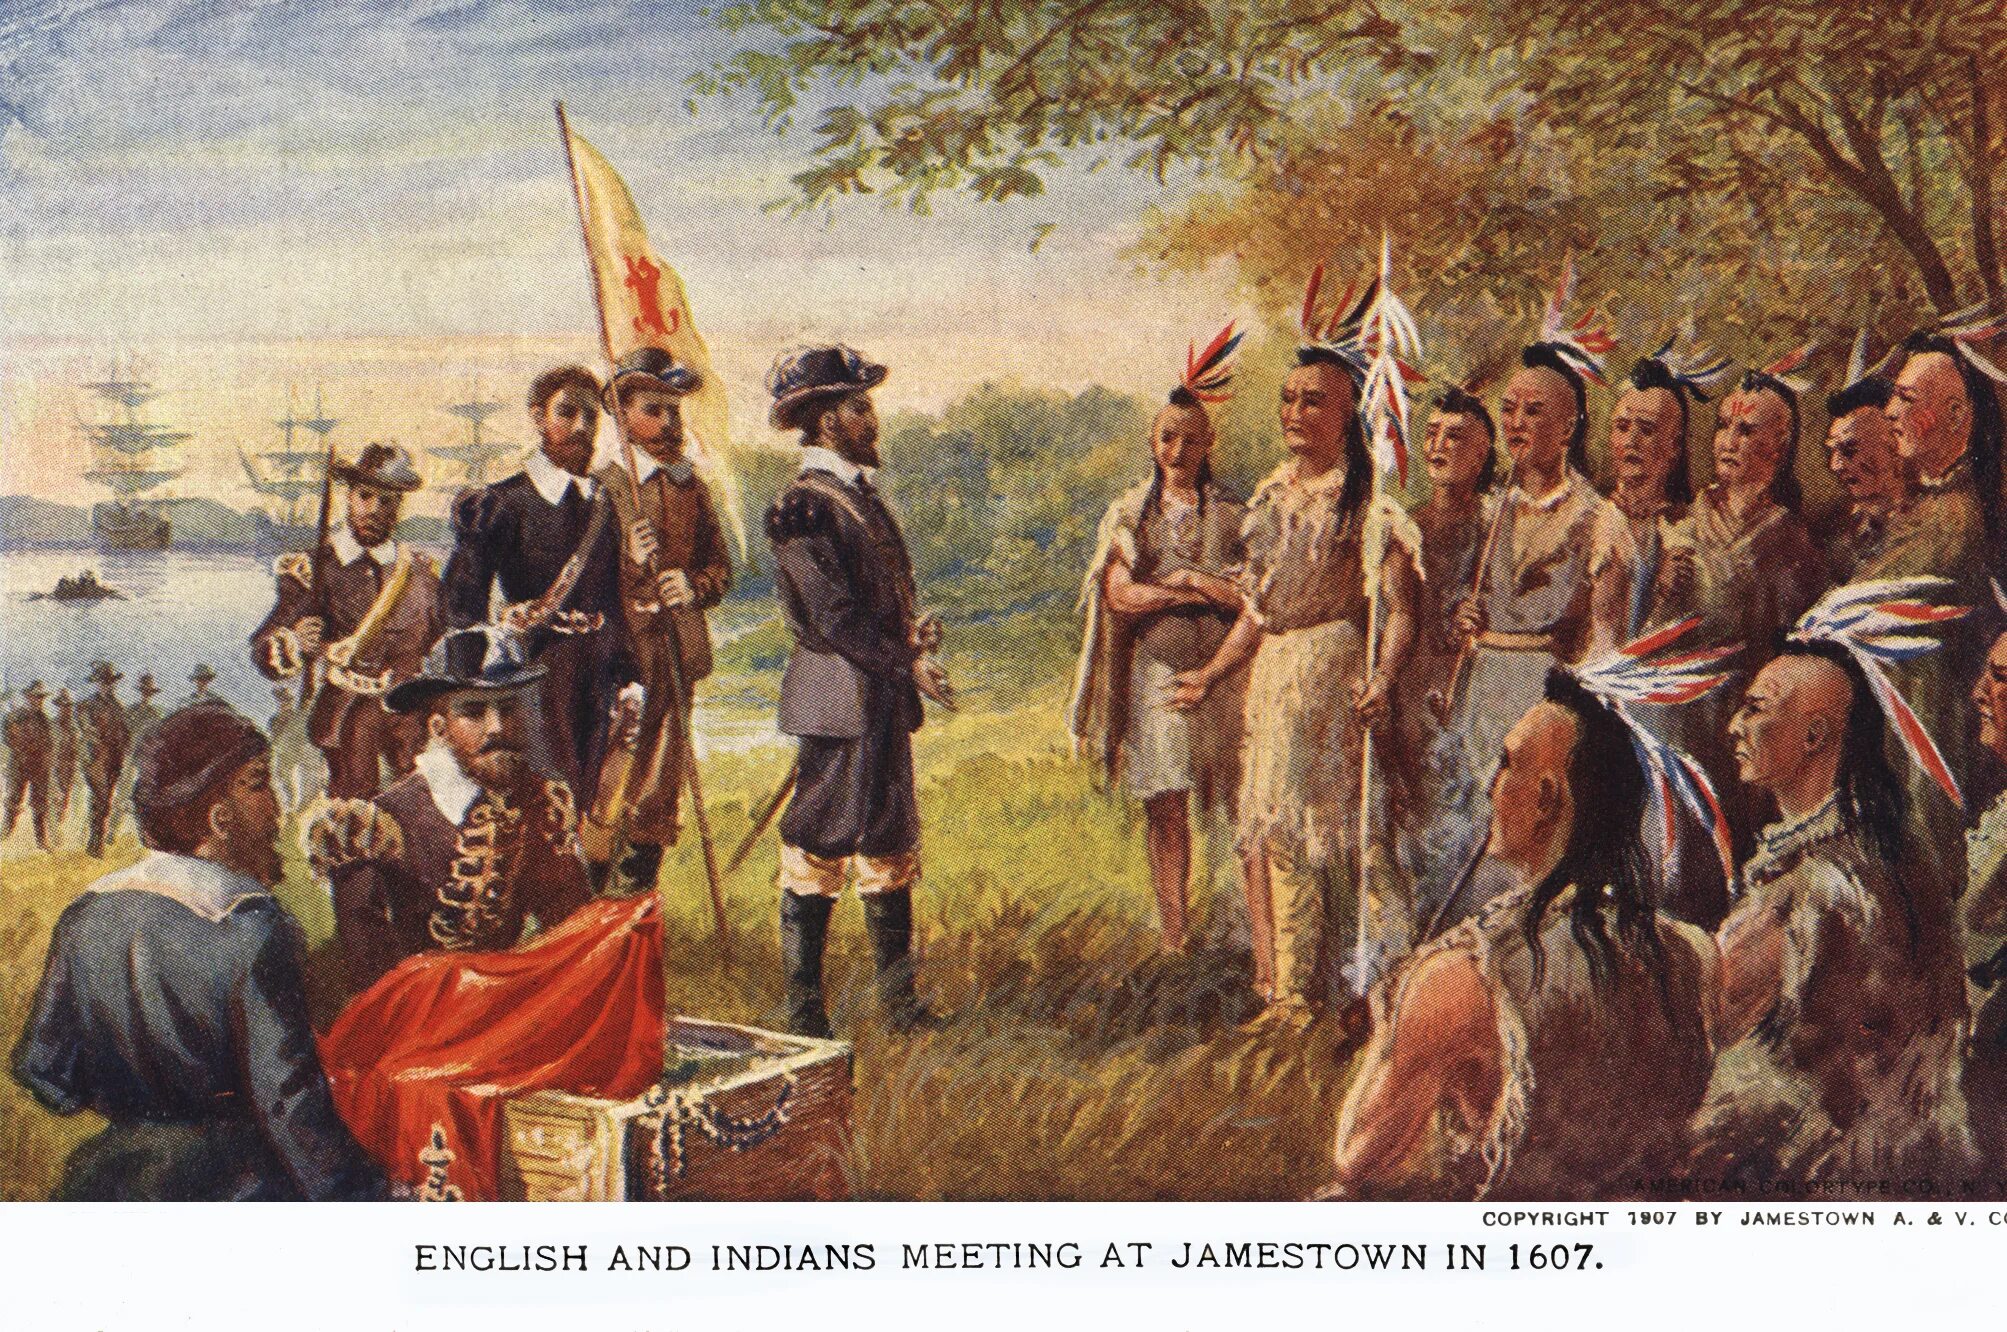 Первое прибытие в америку. Колонизация Америки англичанами (1607—1775). Колонизация Америки англичанами Вирджиния. Колонисты Северной Америки 1607. Колонисты Северной Америки 17 век.